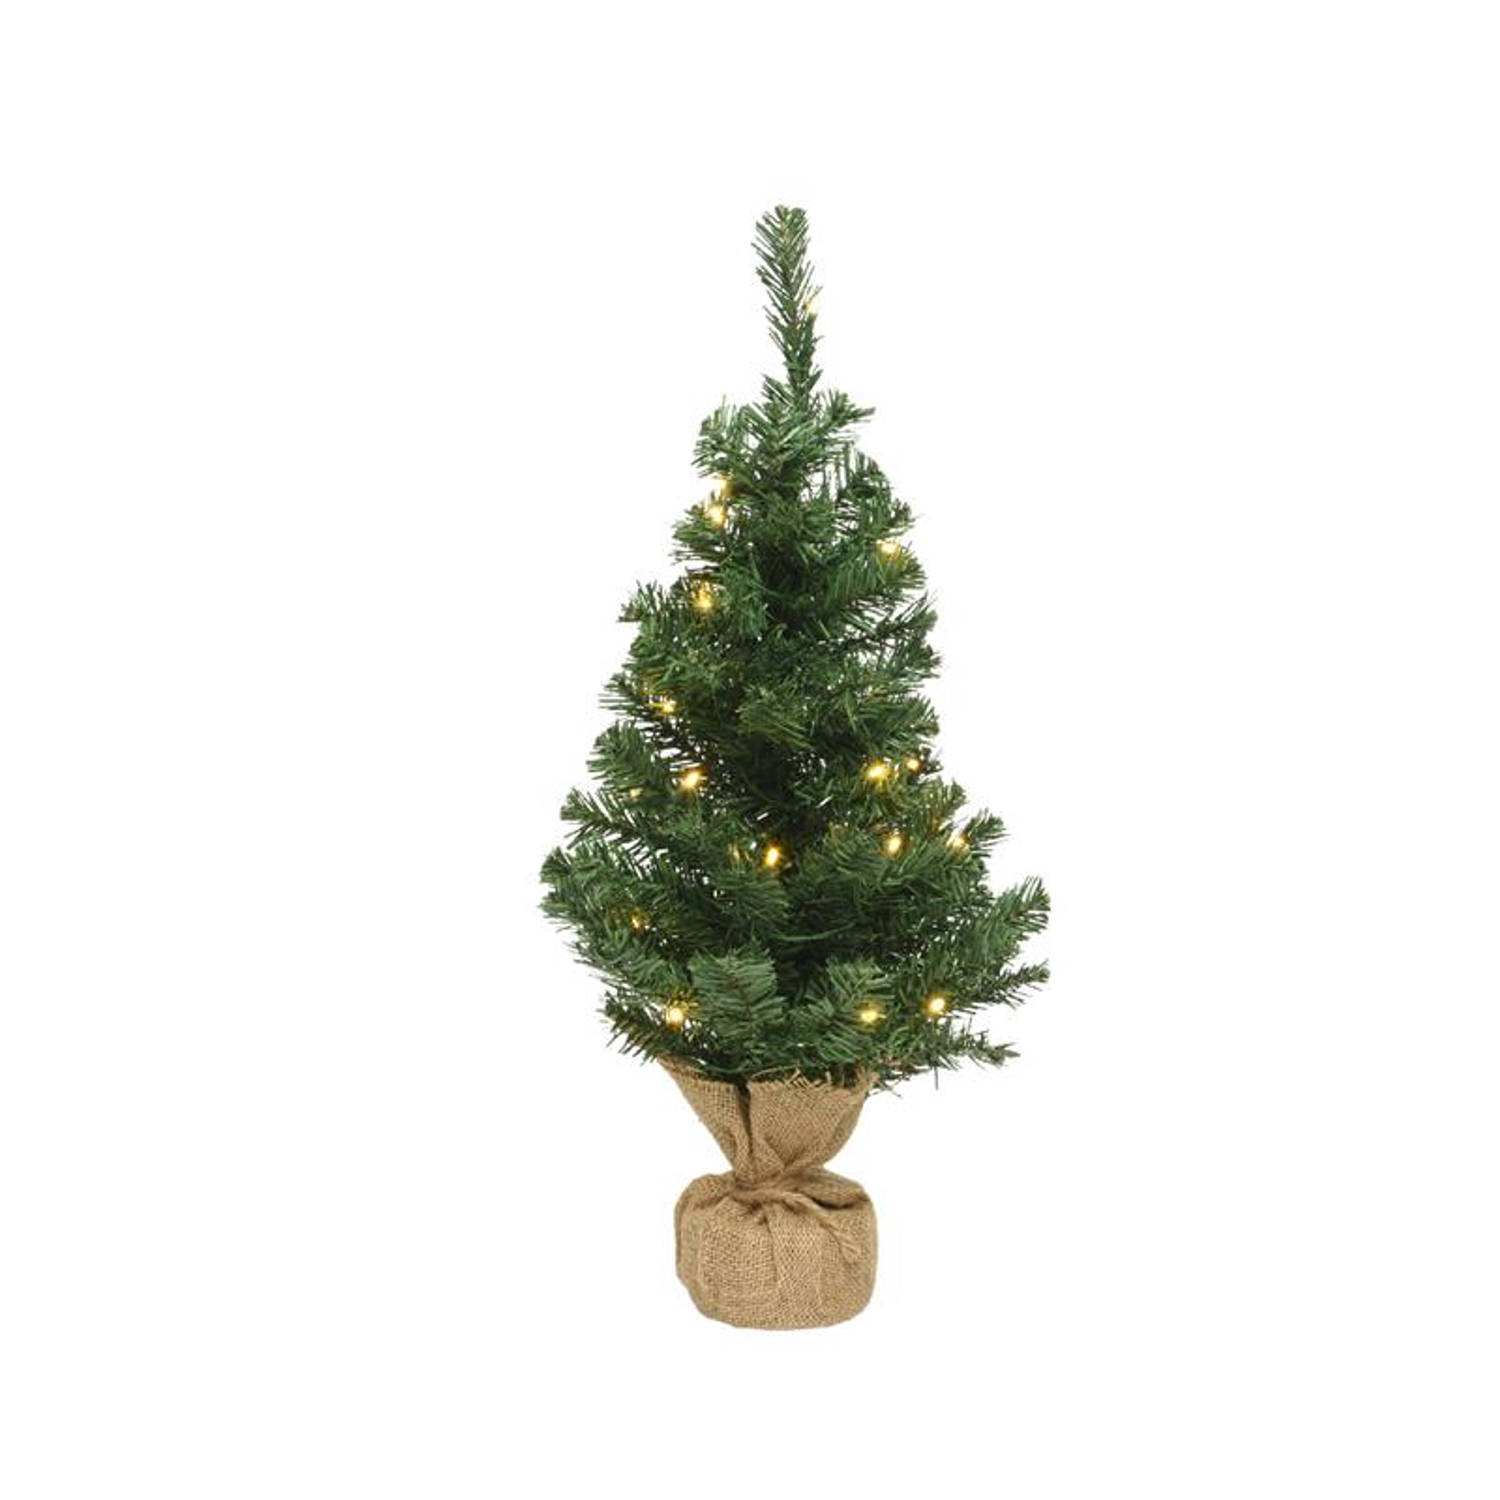 oppervlakkig Op het randje Corroderen Everlands Mini Kerstboom 60cm met verlichting groen | Blokker